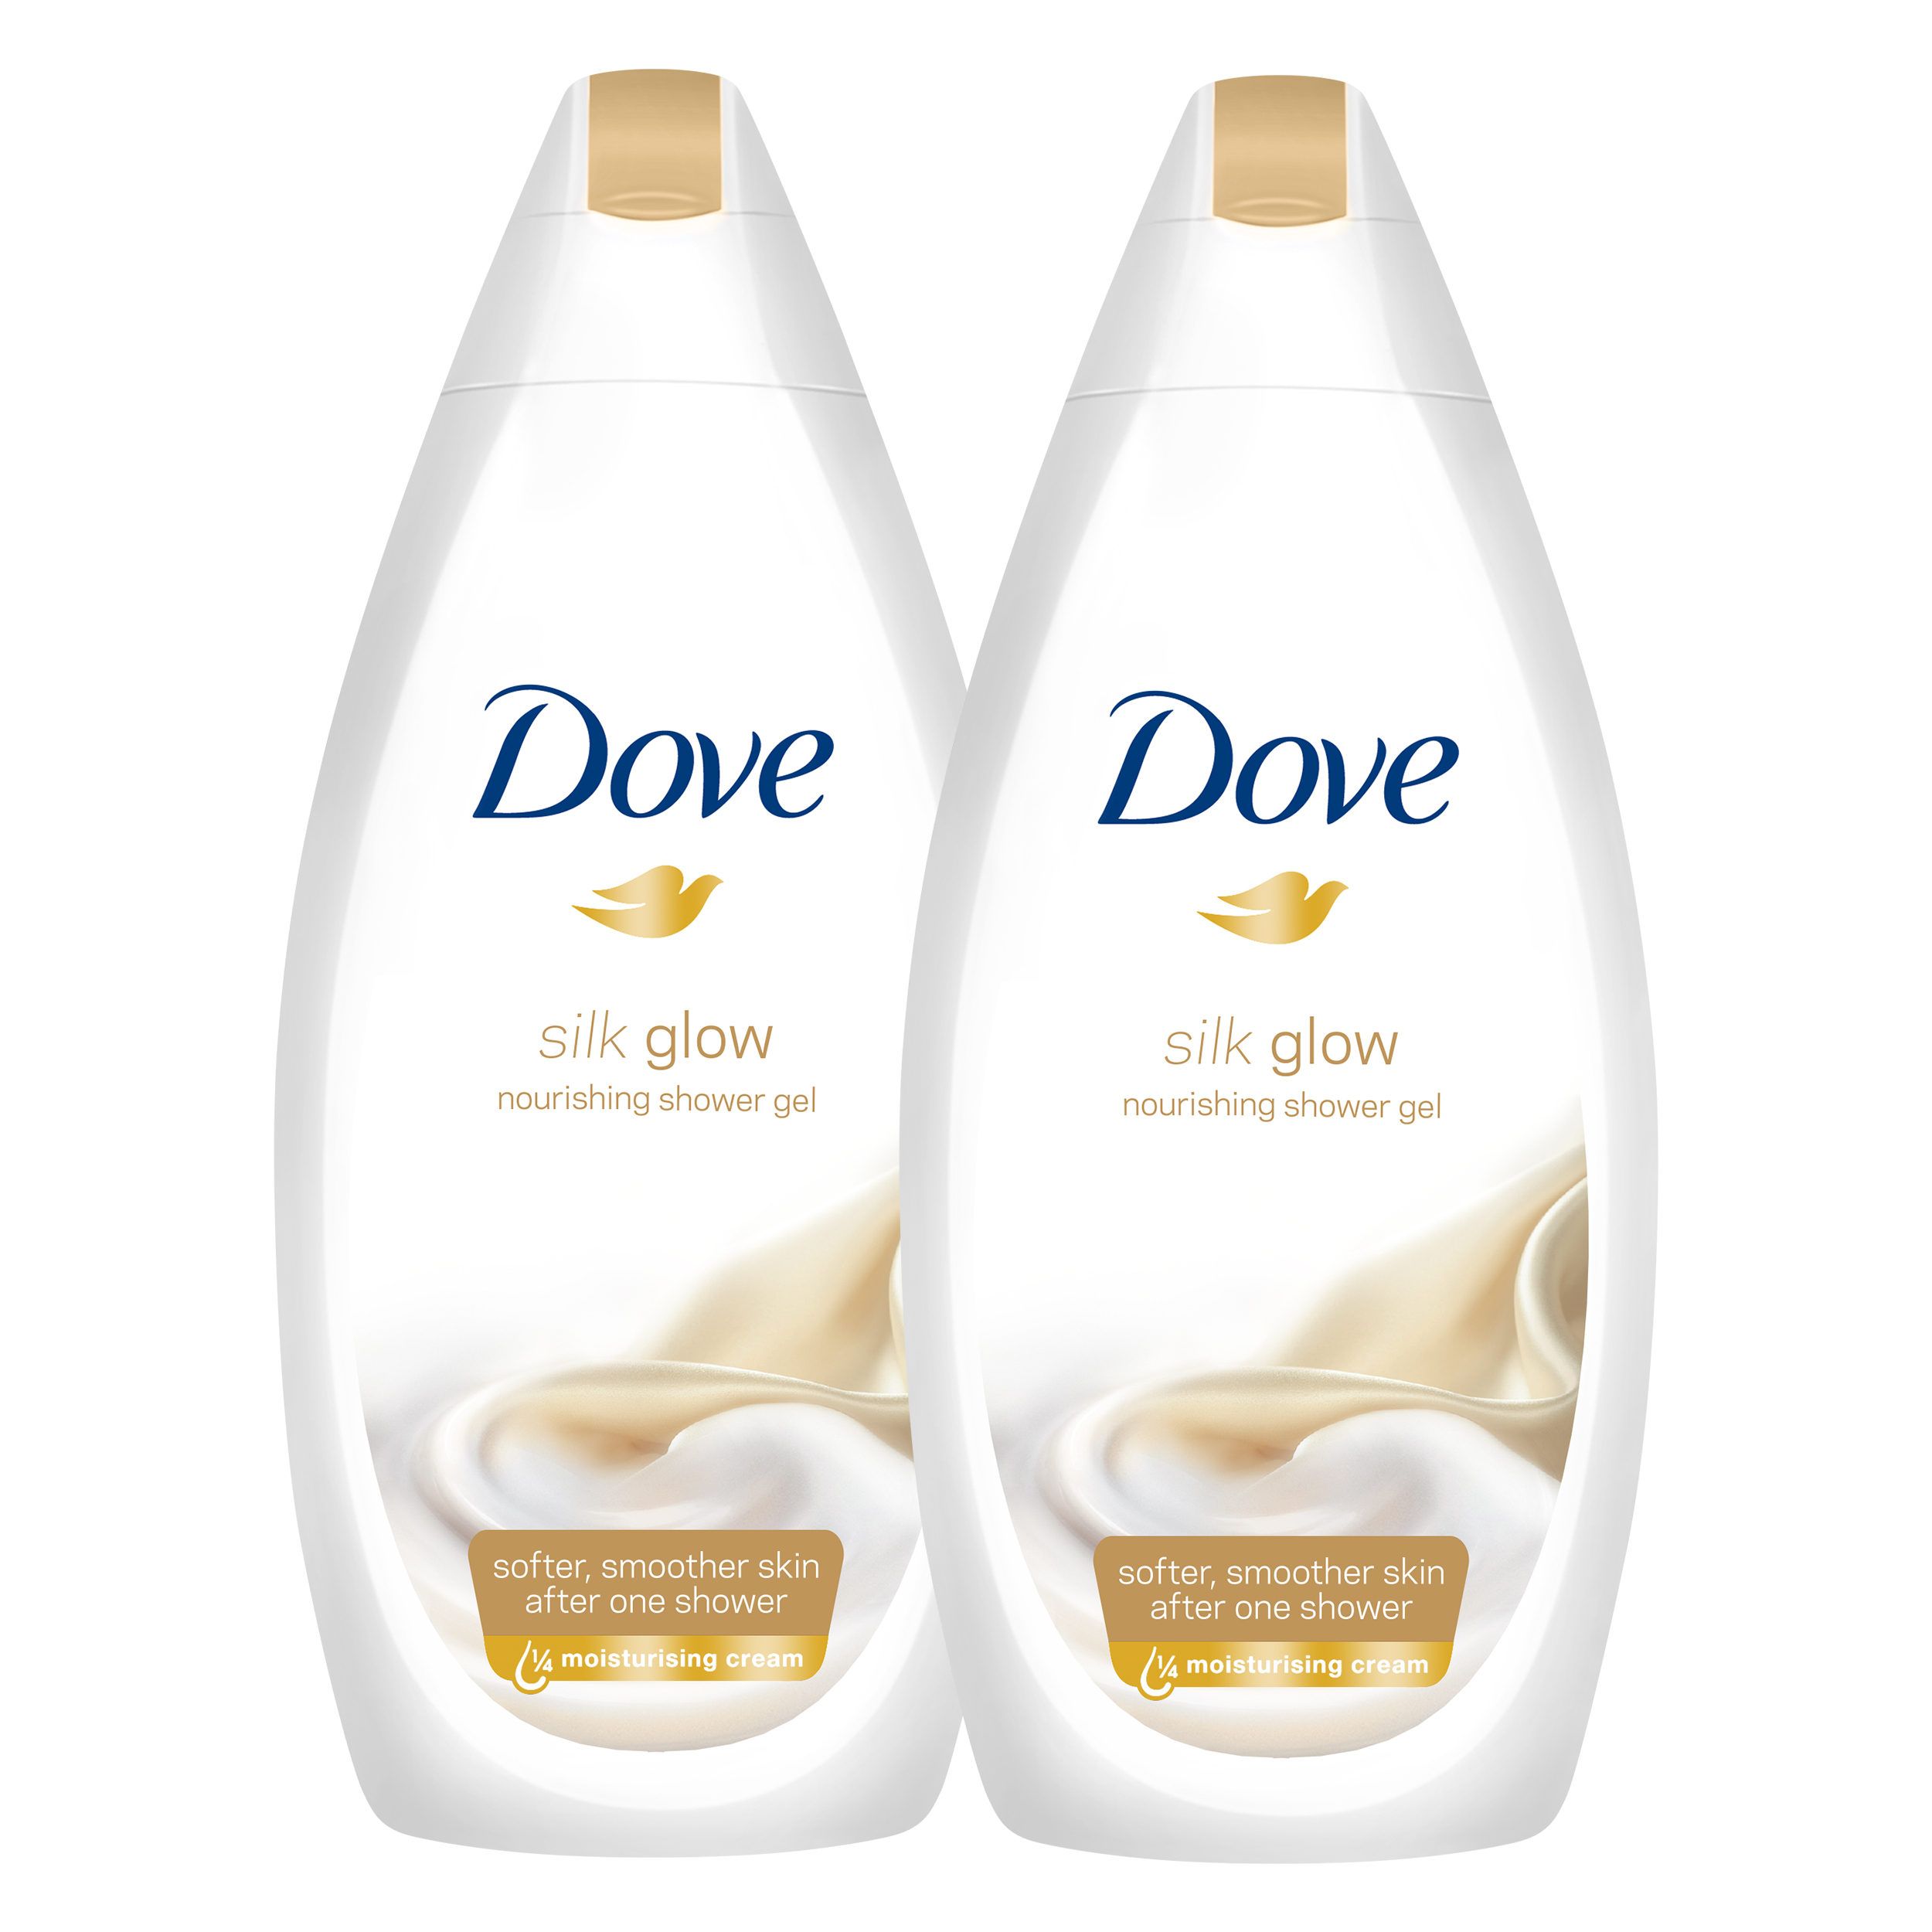 Promocja Dove Silk Glow żel pod prysznic 2 x 750 ml wyprzedaż przecena